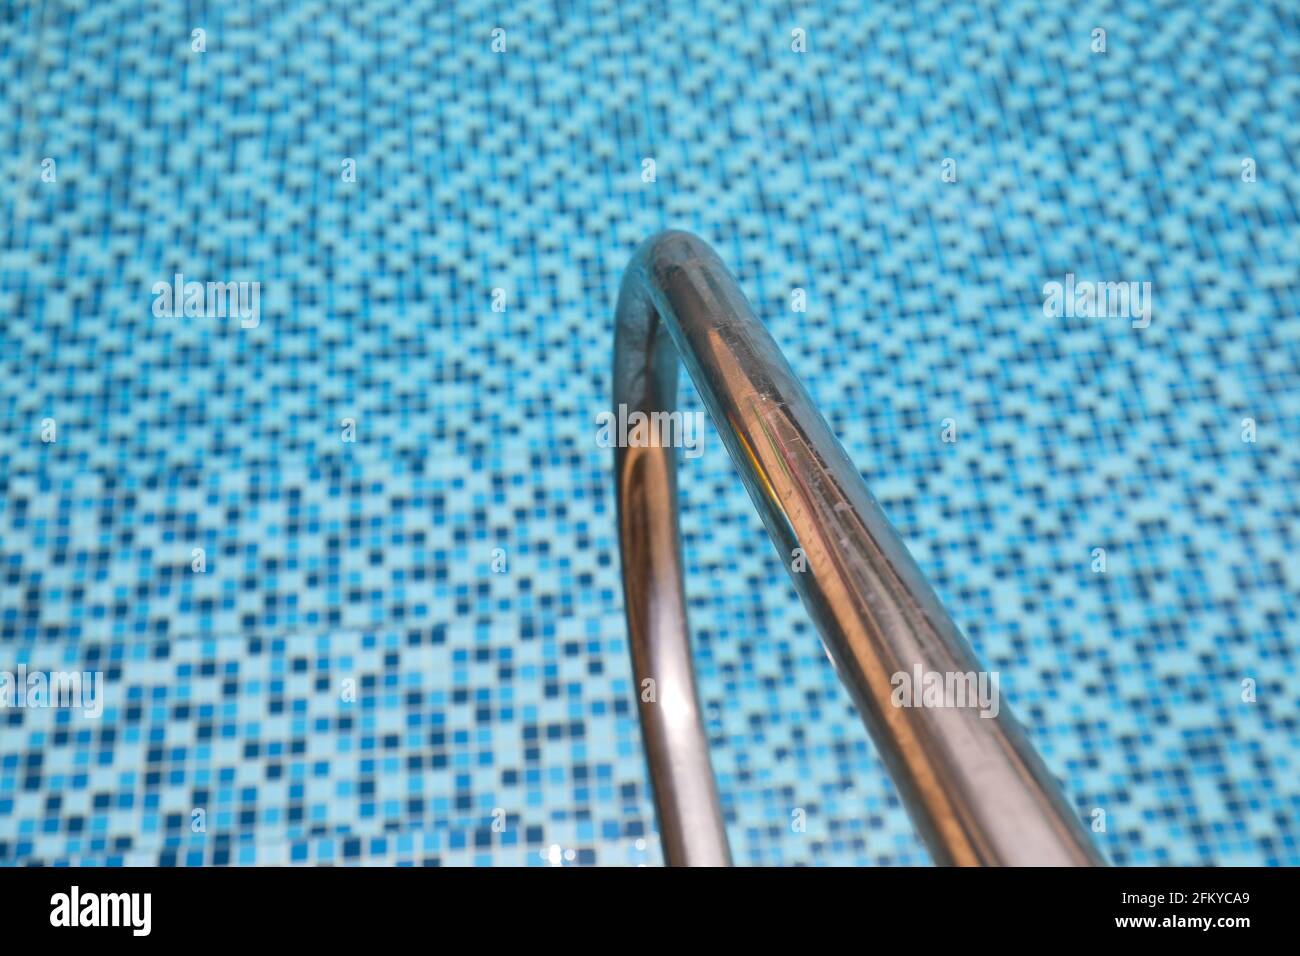 Barras de agarre escalera en una piscina azul. Foto de stock